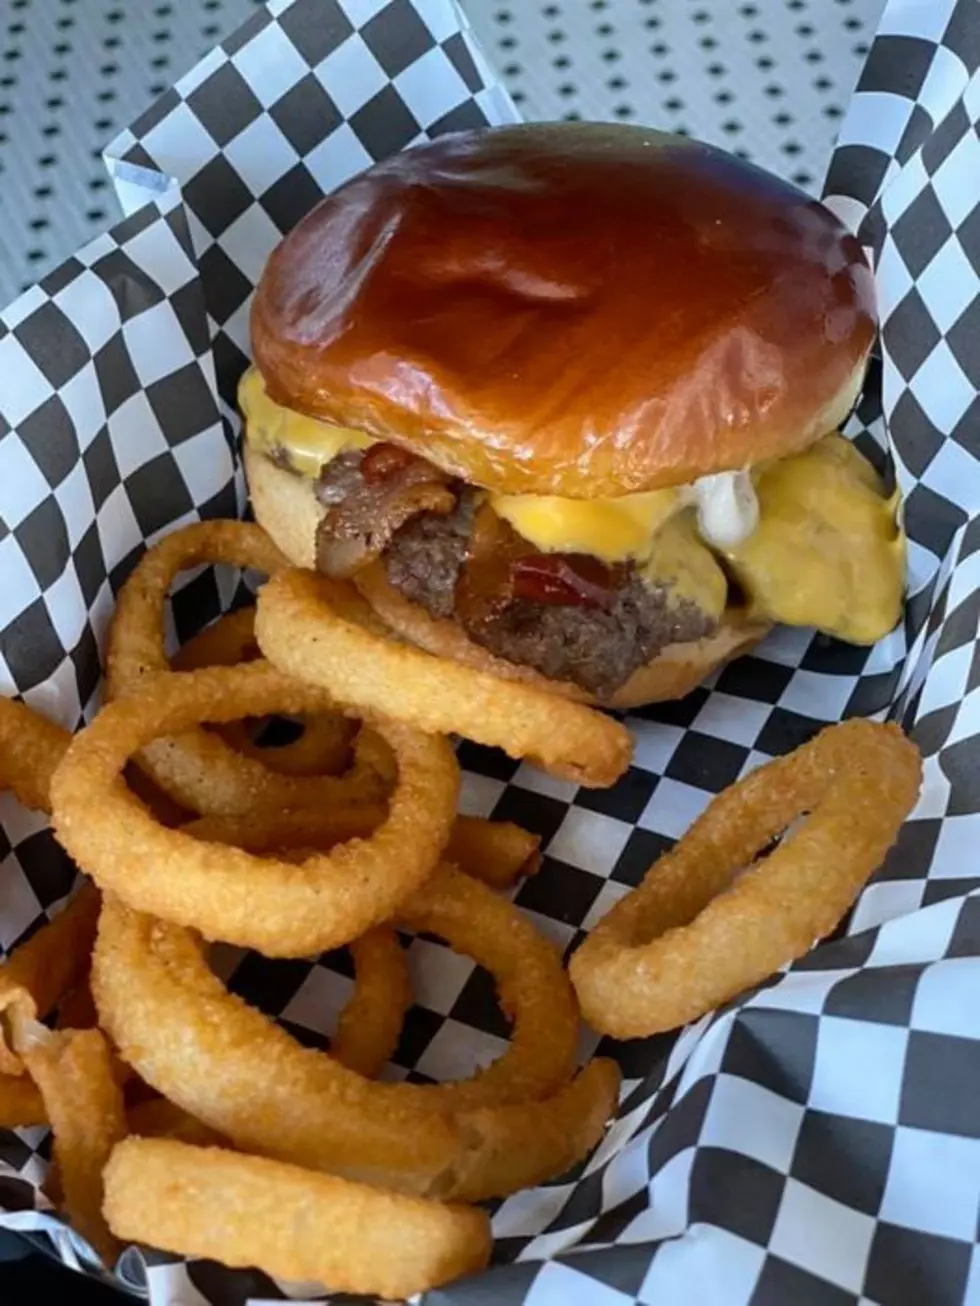 Capital Burger Texarkana&#8217;s Newest Eatery Now Open